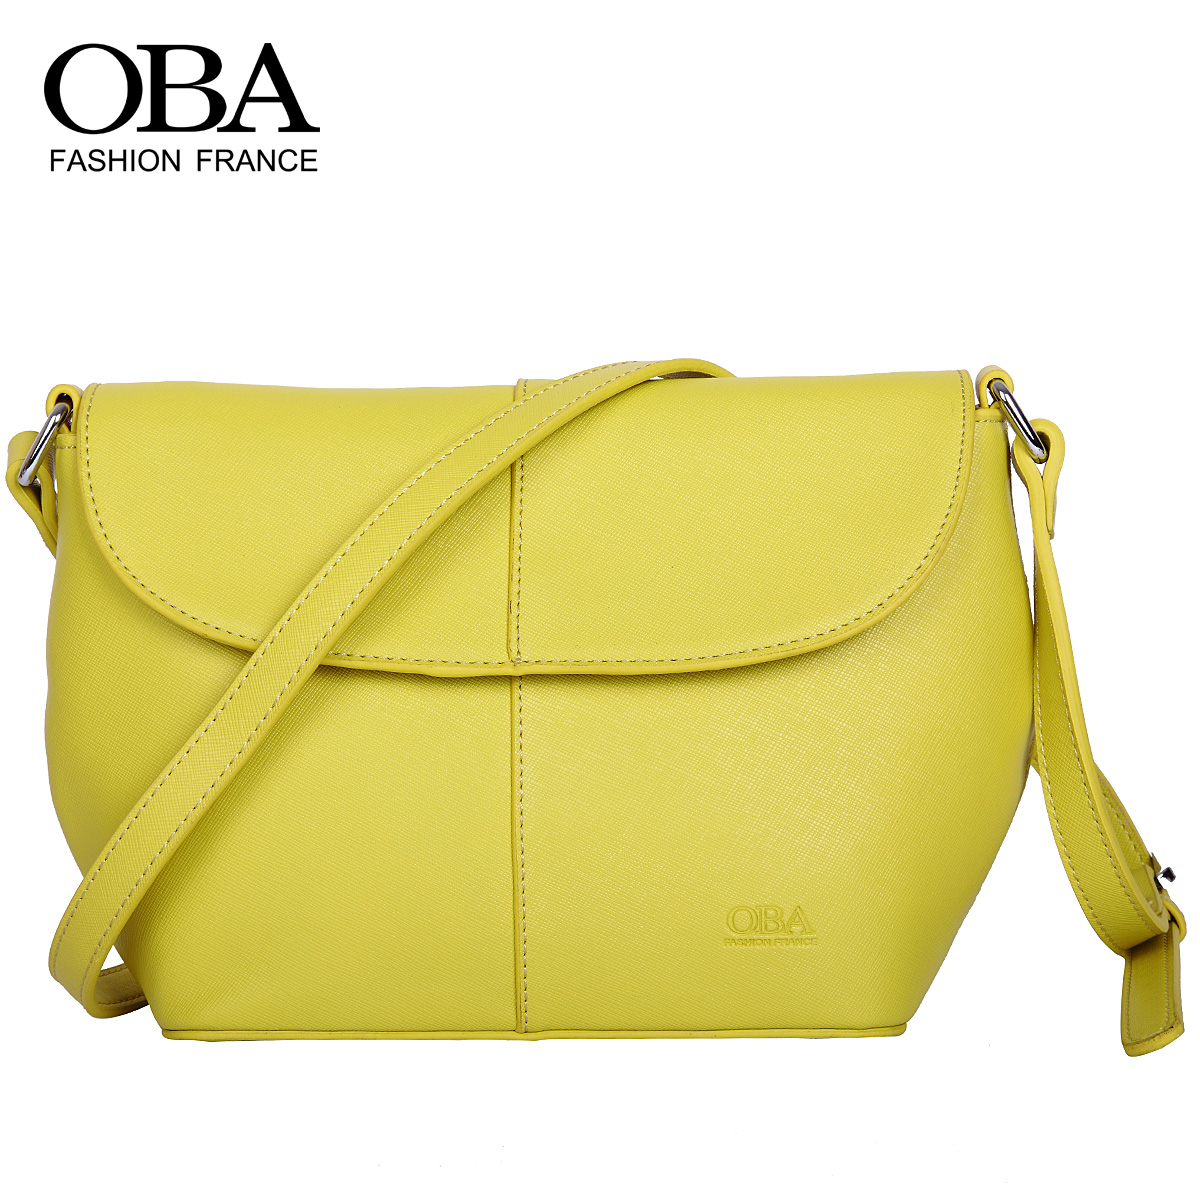 OBA原创包形 2014新款时尚斜挎女包单肩包简约真牛皮小包专柜正品